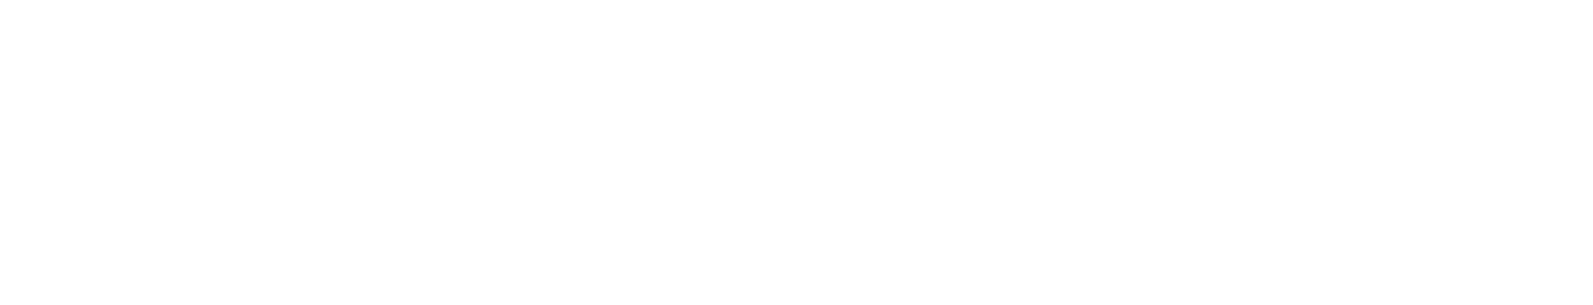 Mobilicom logo grand pour les fonds sombres (PNG transparent)